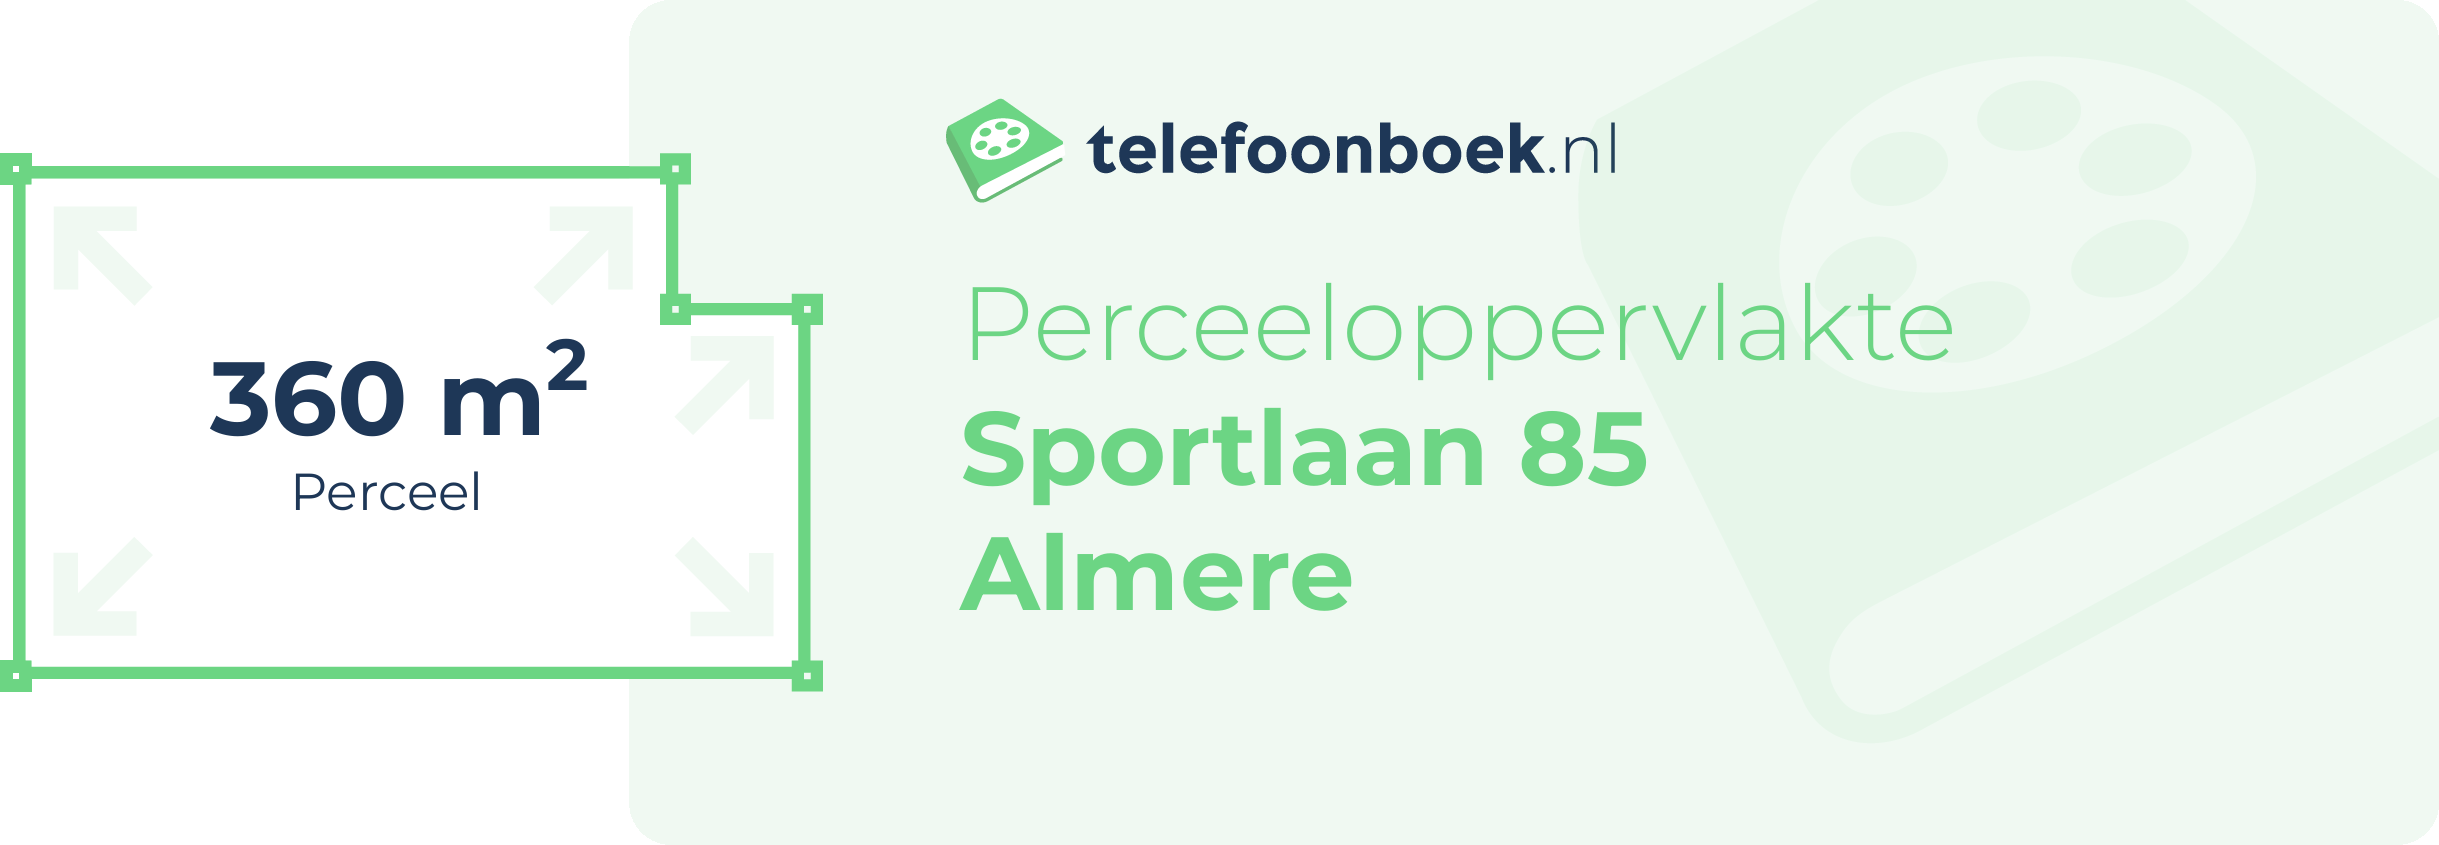 Perceeloppervlakte Sportlaan 85 Almere